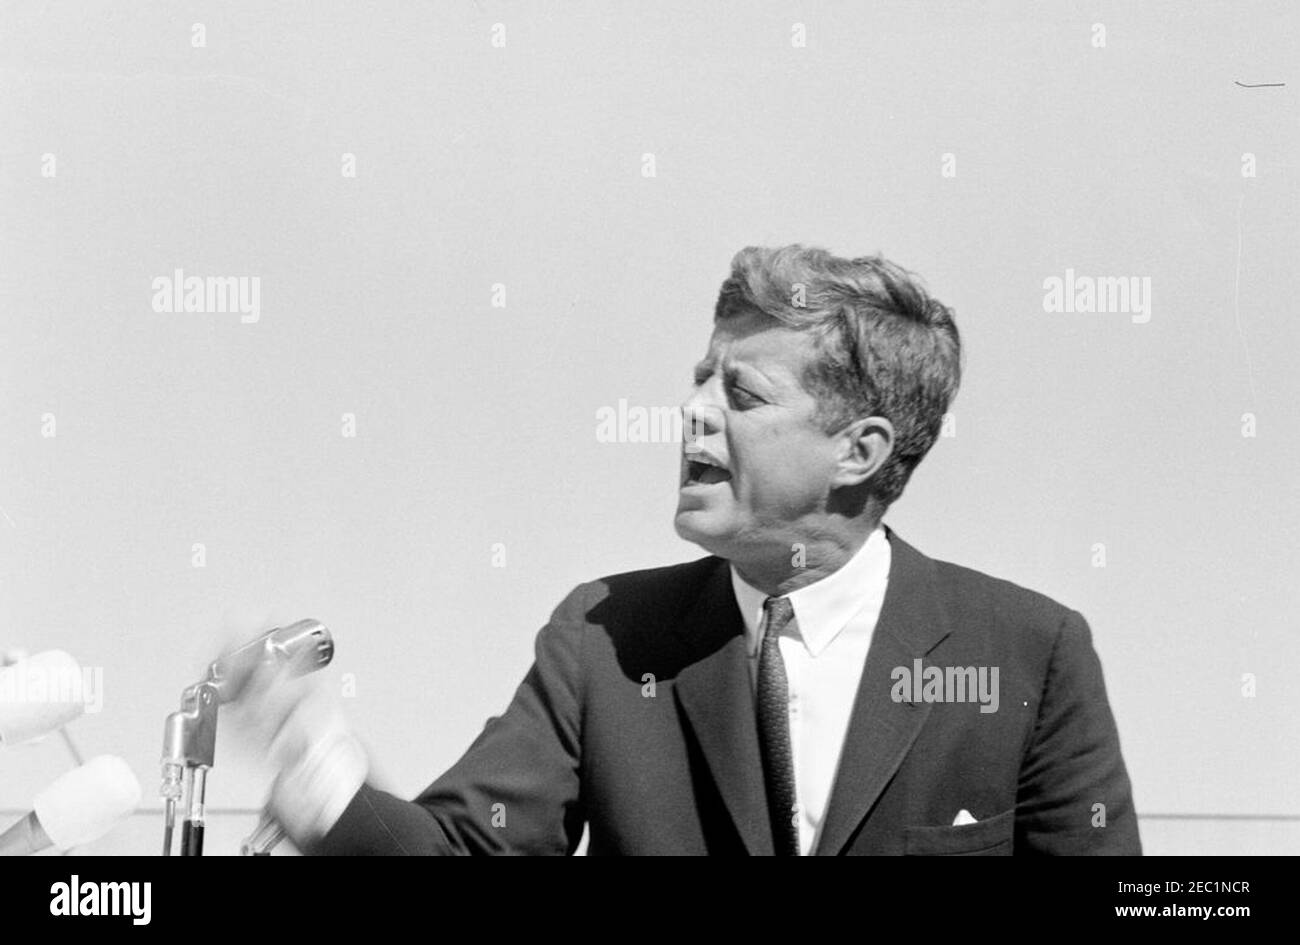 Campagna del Congresso: Monessen, Pennsylvania, rally. Il presidente John F. Kennedy ha espresso le sue osservazioni a un raduno della campagna del Congresso a Monessen, Pennsylvania. Foto Stock